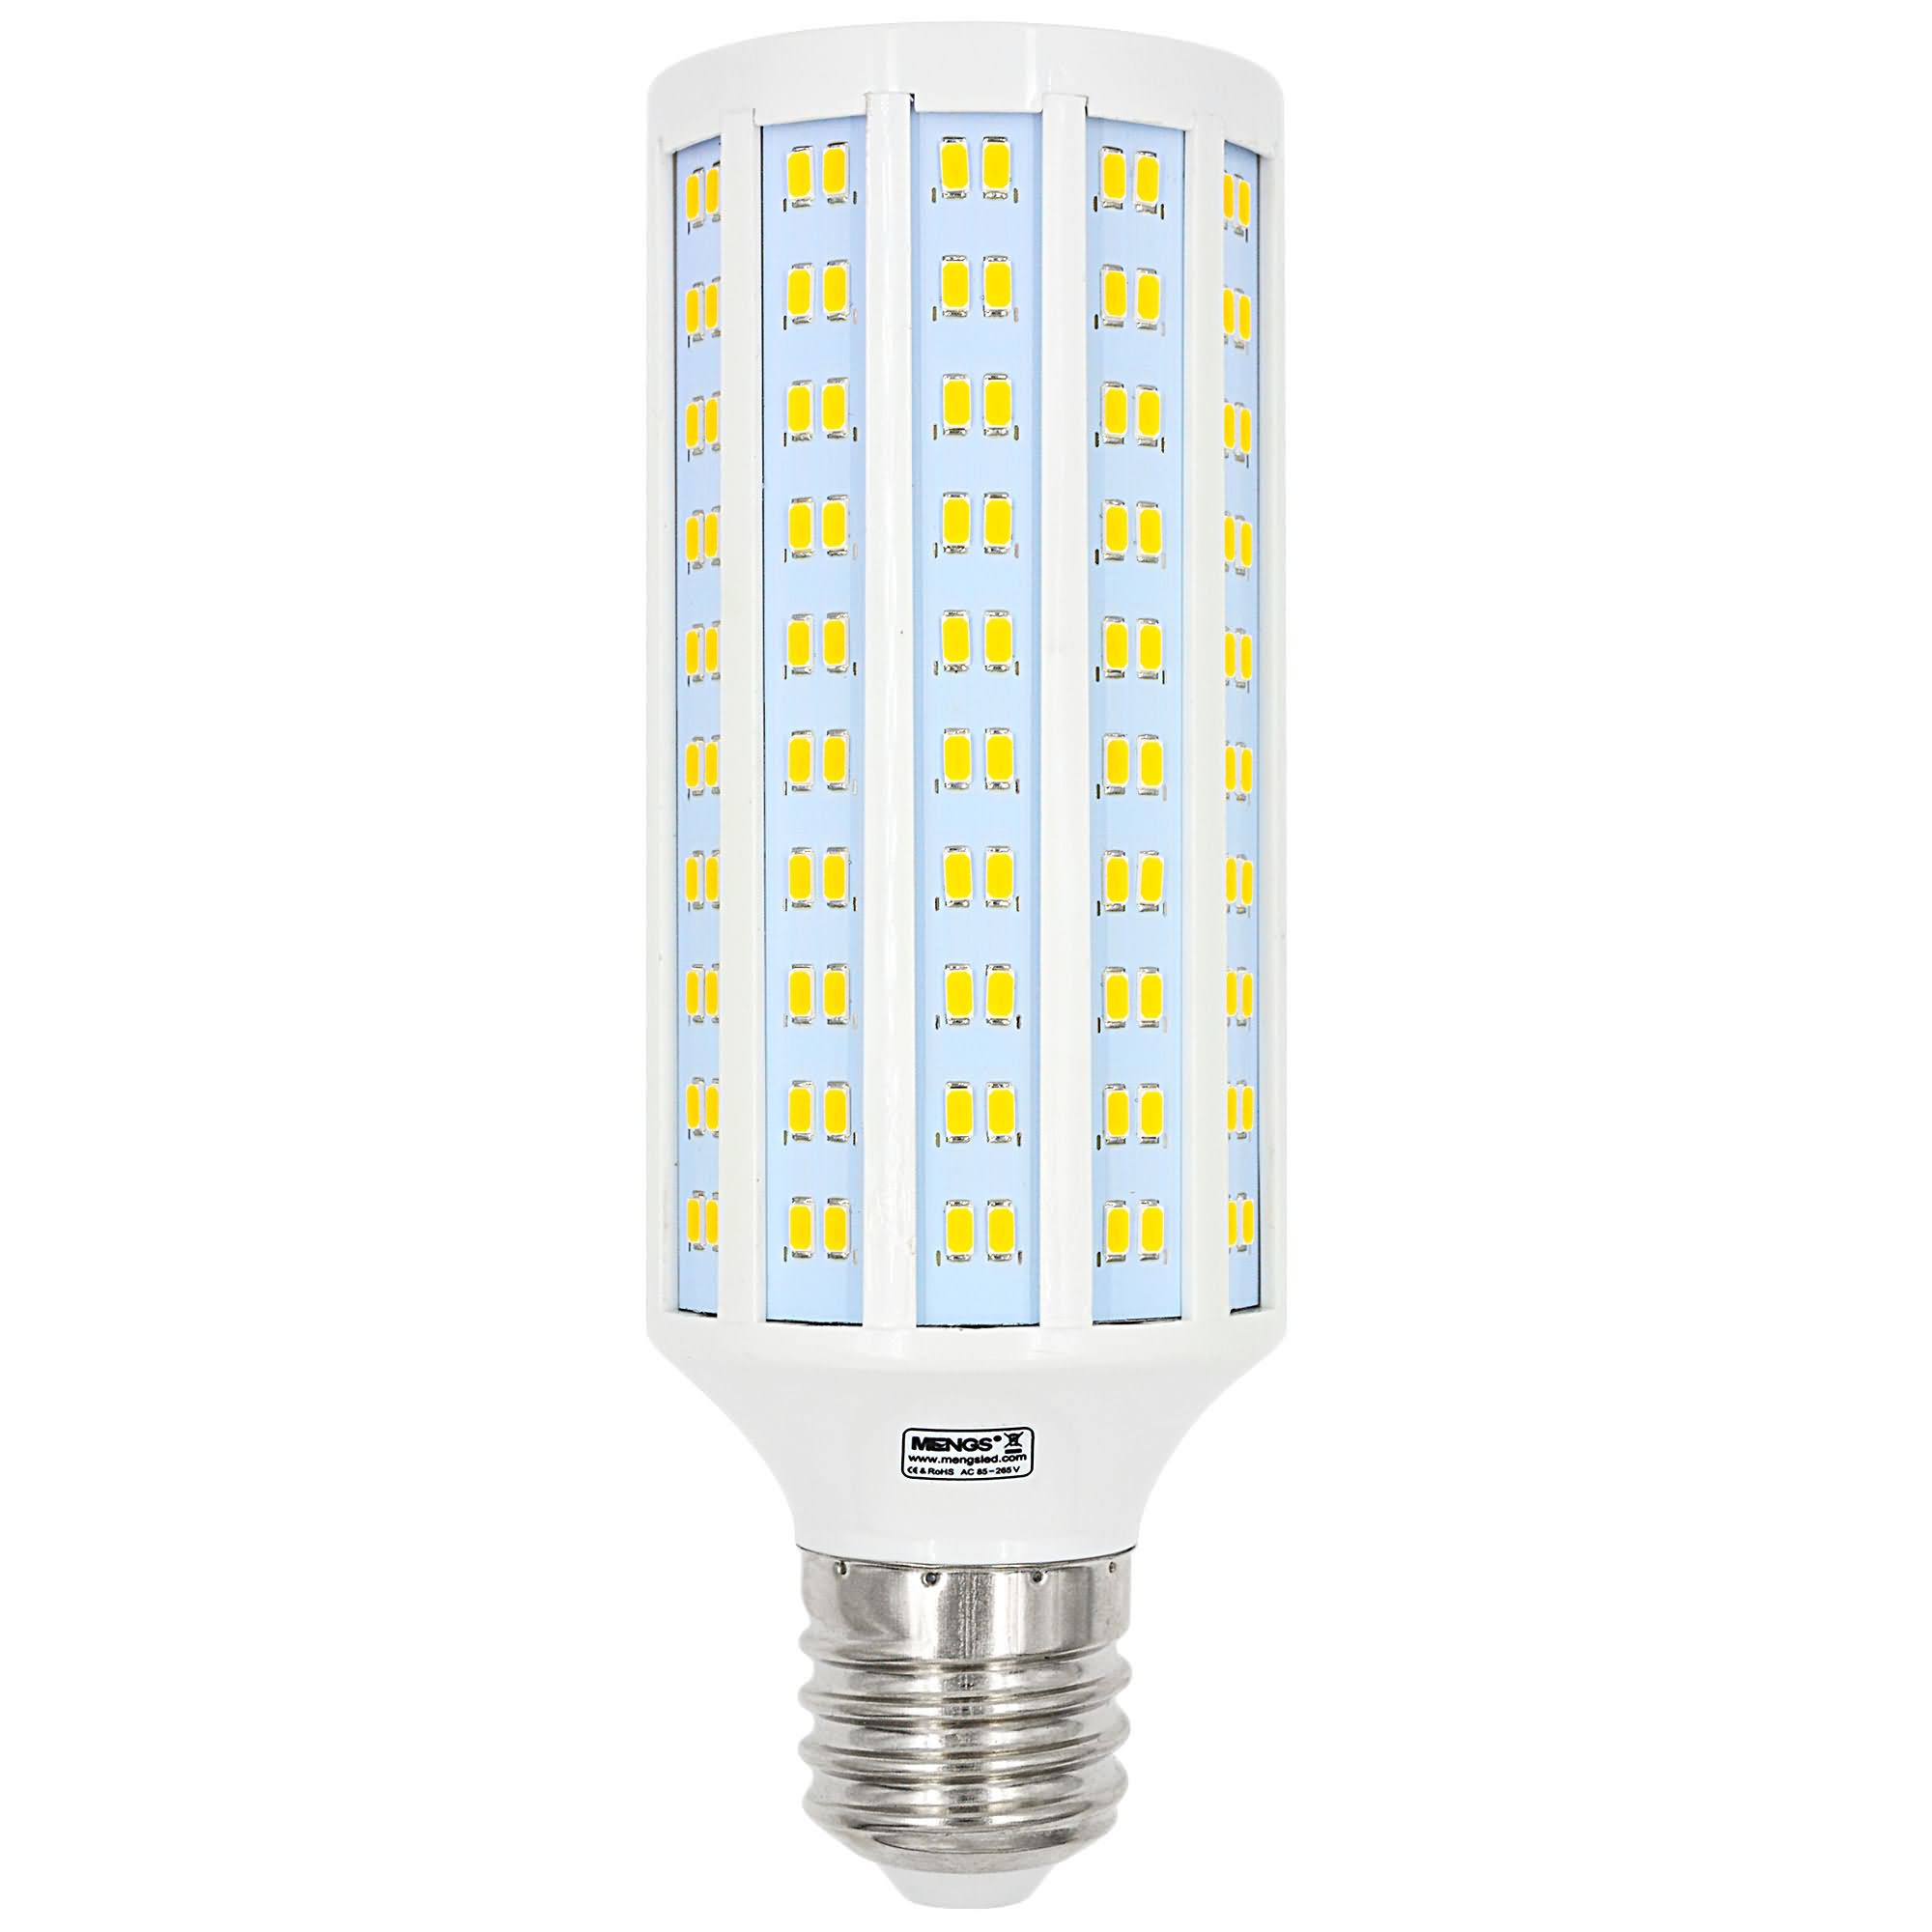 5 x G9 LED Lampe 5W=40W Warmweiß Leuchtmittel Lampen AC/DC 85V-265V 350LM 